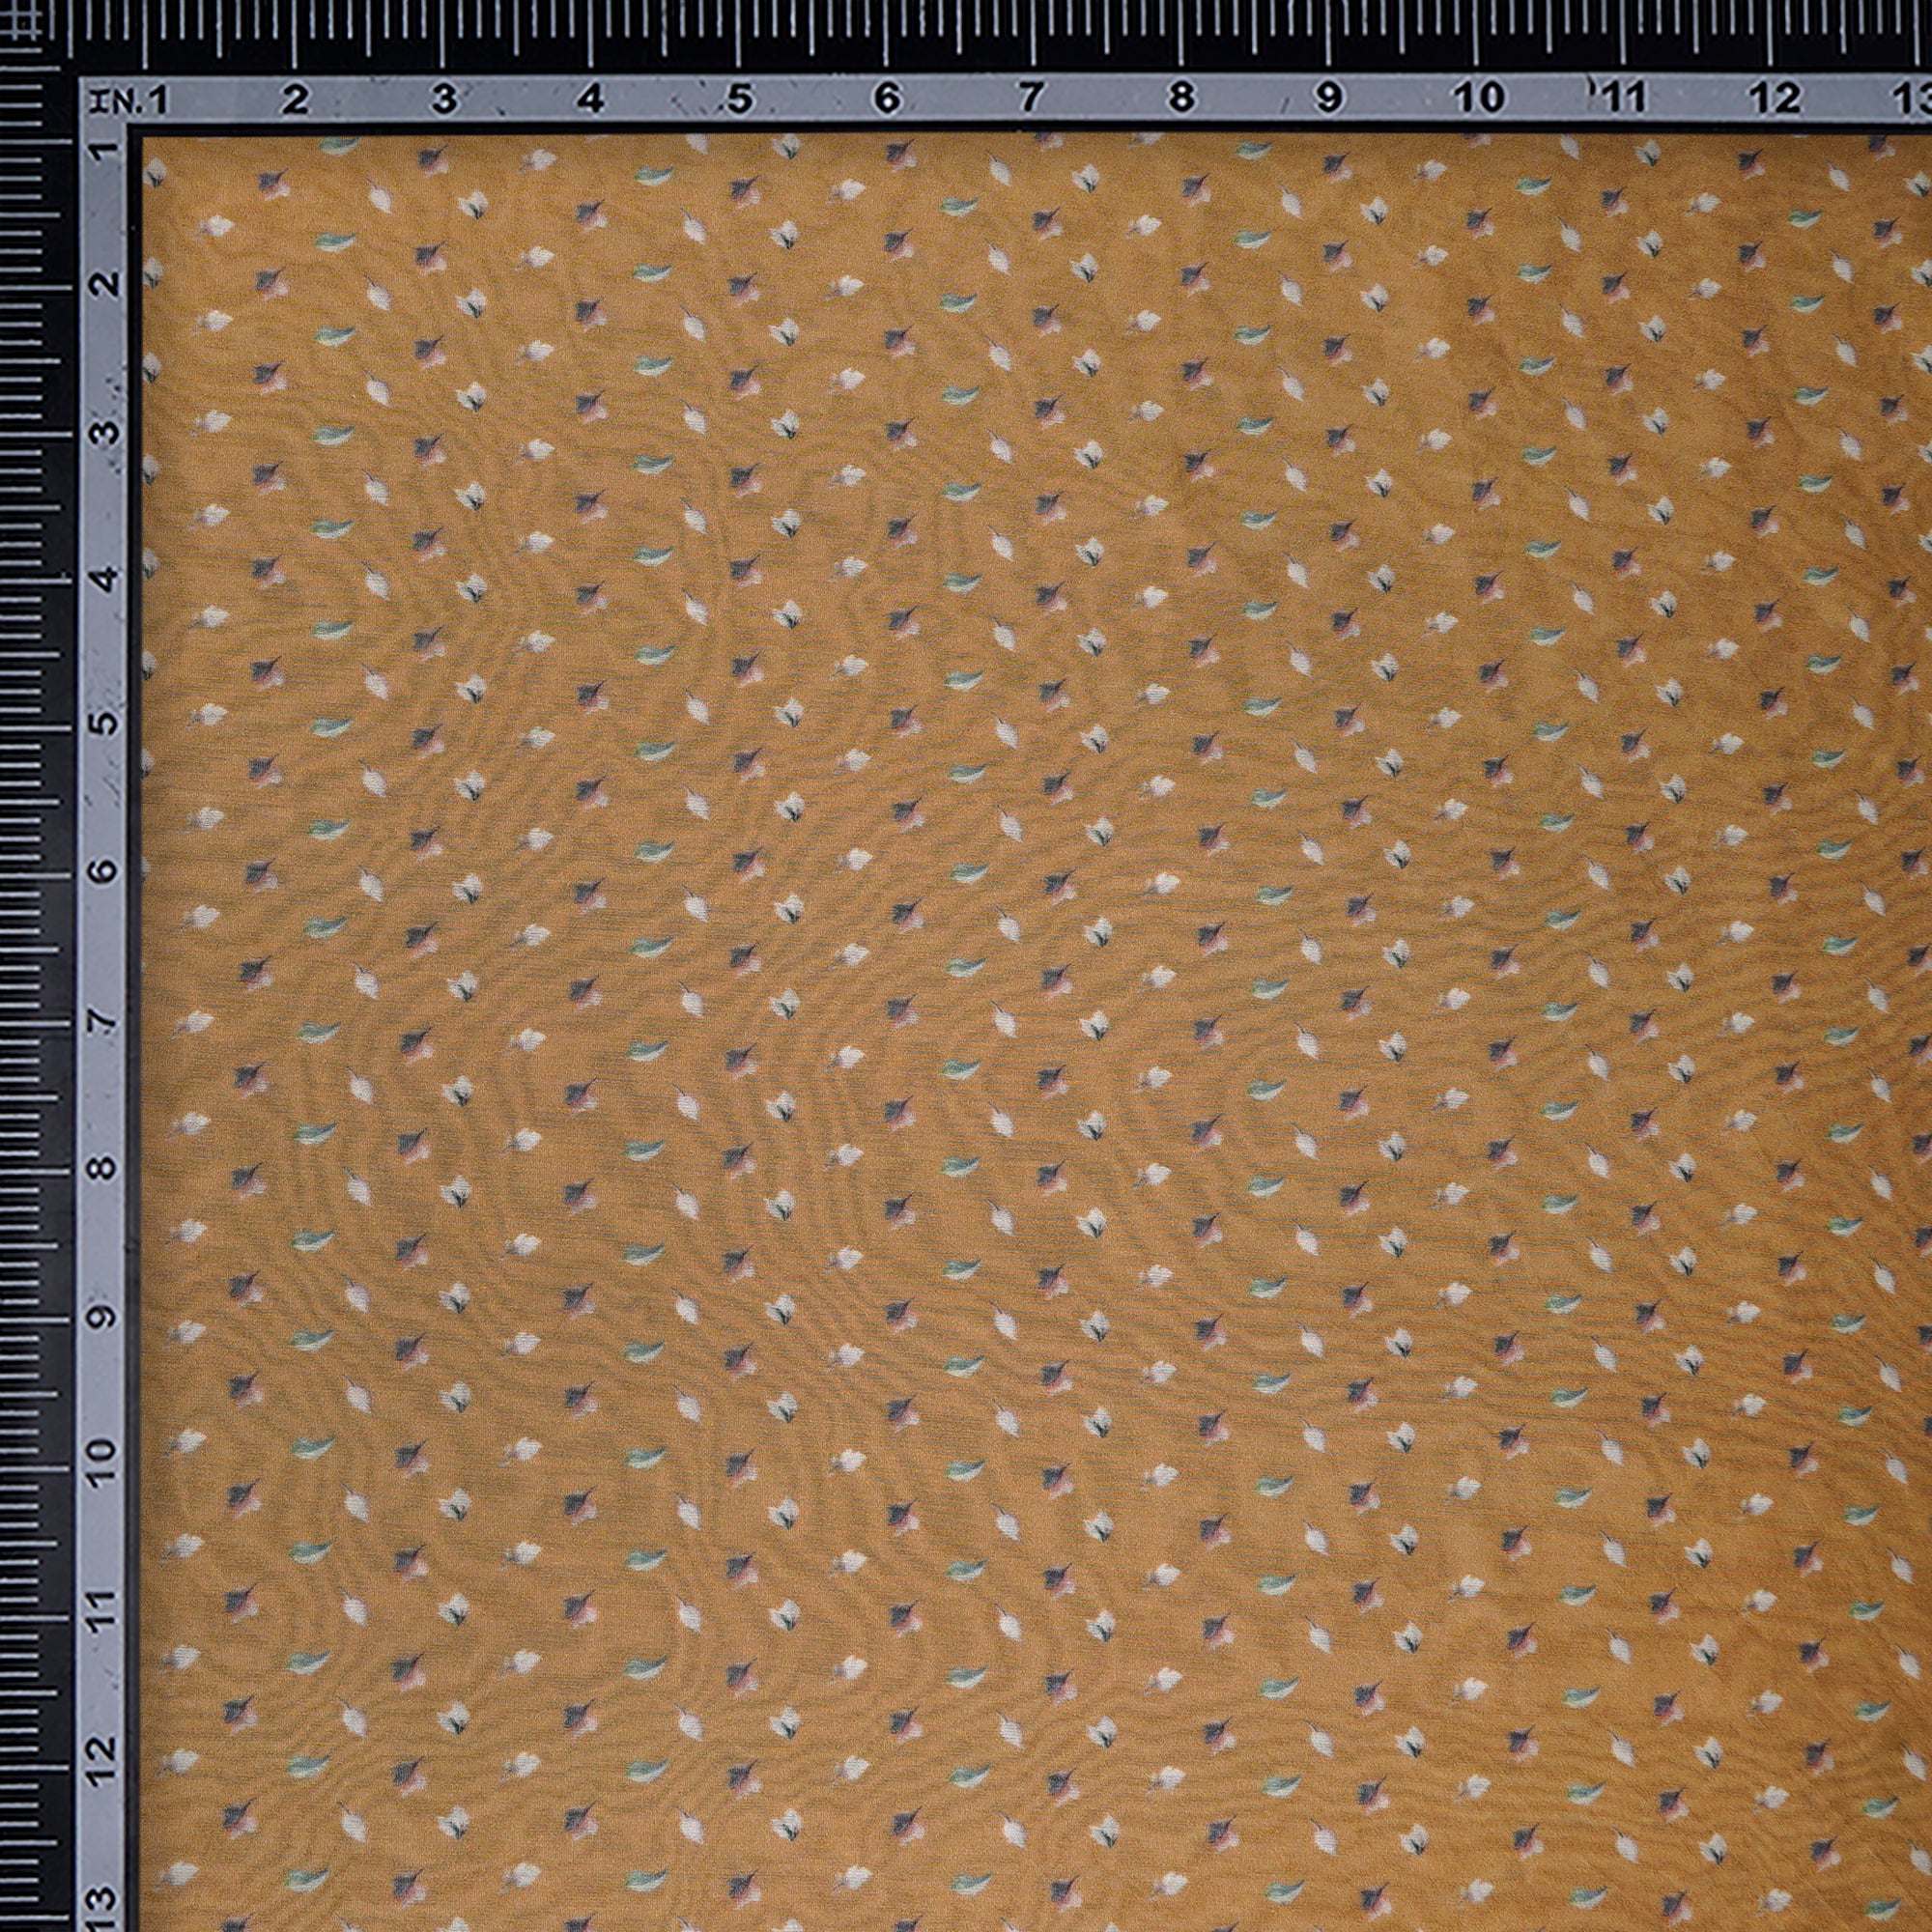 Taffy Leaf Pattern Digital Print Chanderi Fabric